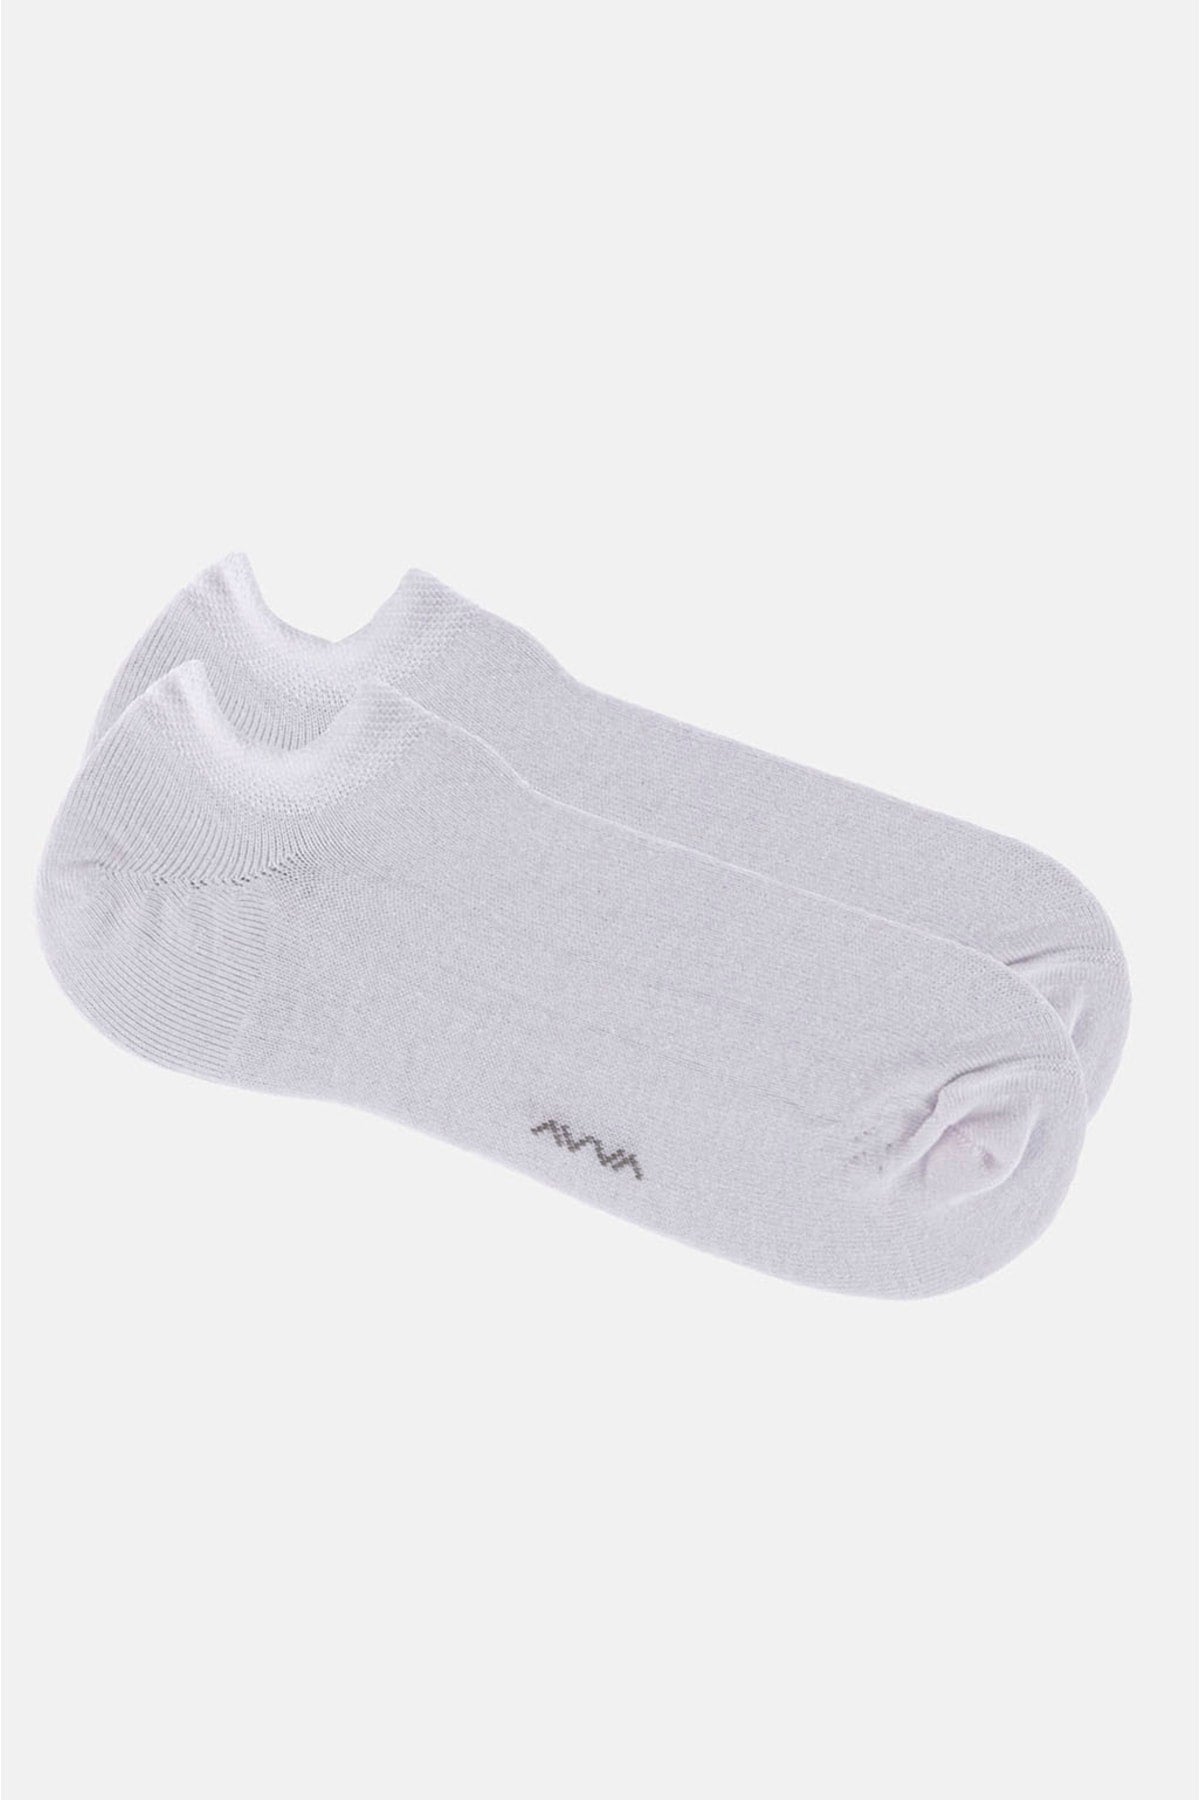 Men's white sneaker socks E008553